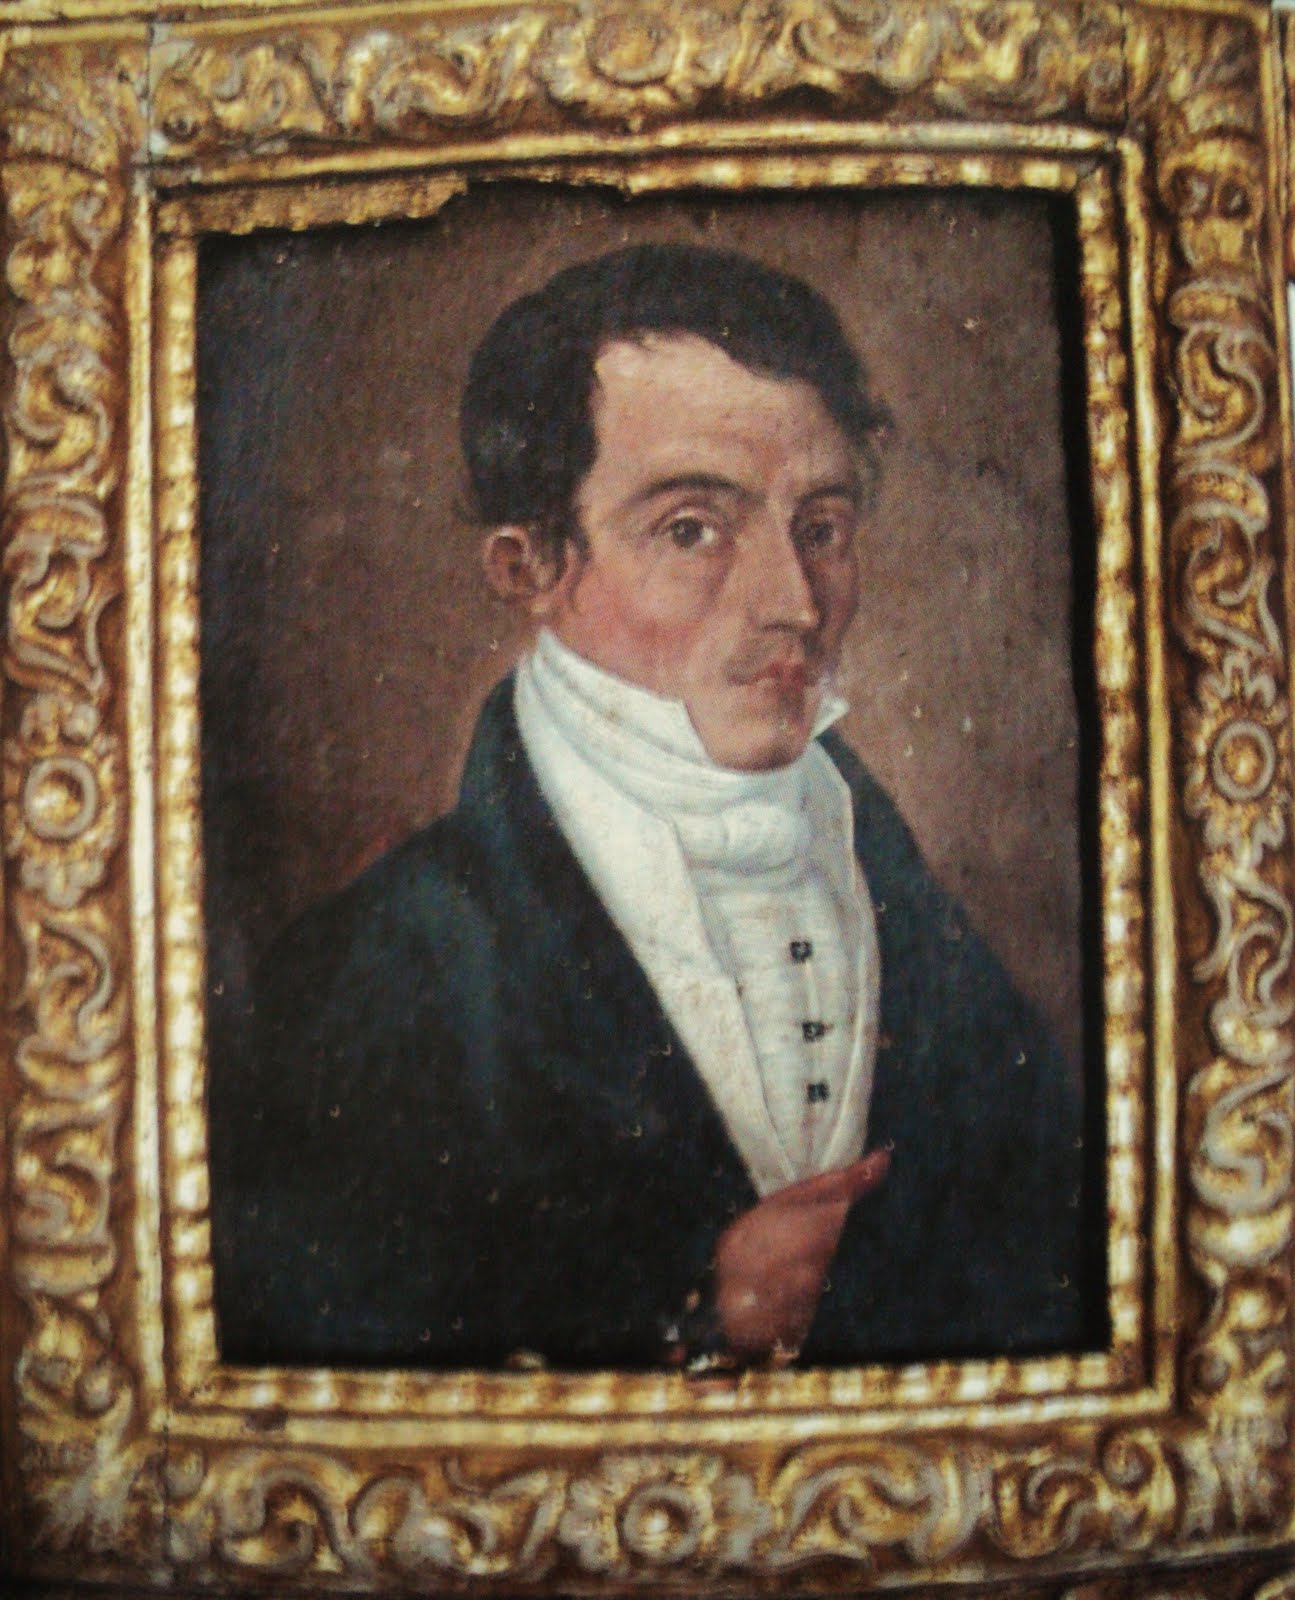 REFLEXIONES ACERCA DE LAS VIRUELAS. 1785. Real Audiencia de Quito. Autor: Dr. Eugenio Espejo.